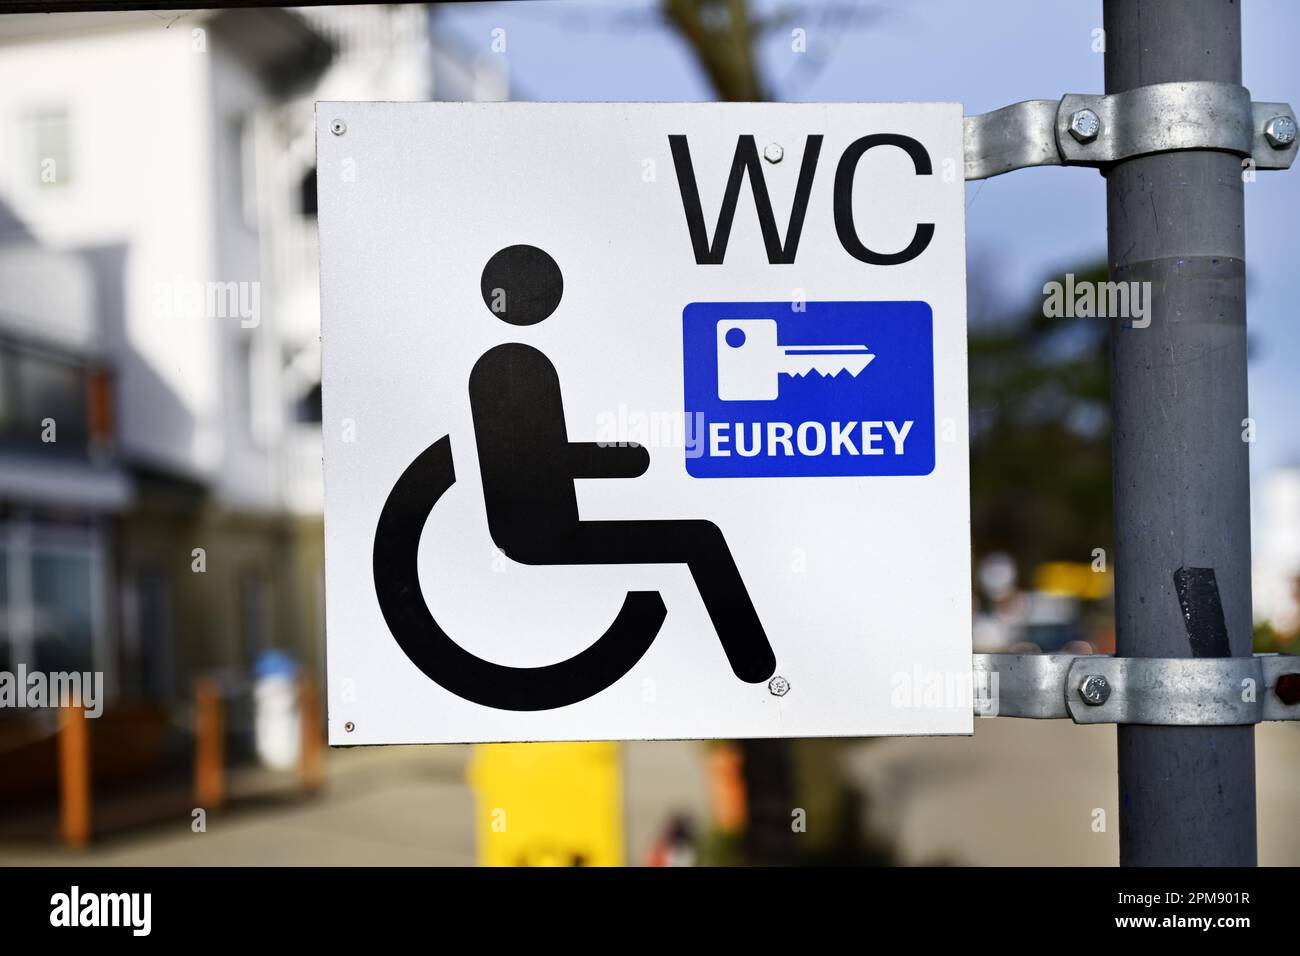 Wegweiser zu einem Behinderten-WC mit Eurokey-Zugang in Scharbeutz, Schleswig-Holstein, Deutschland Stock Photo